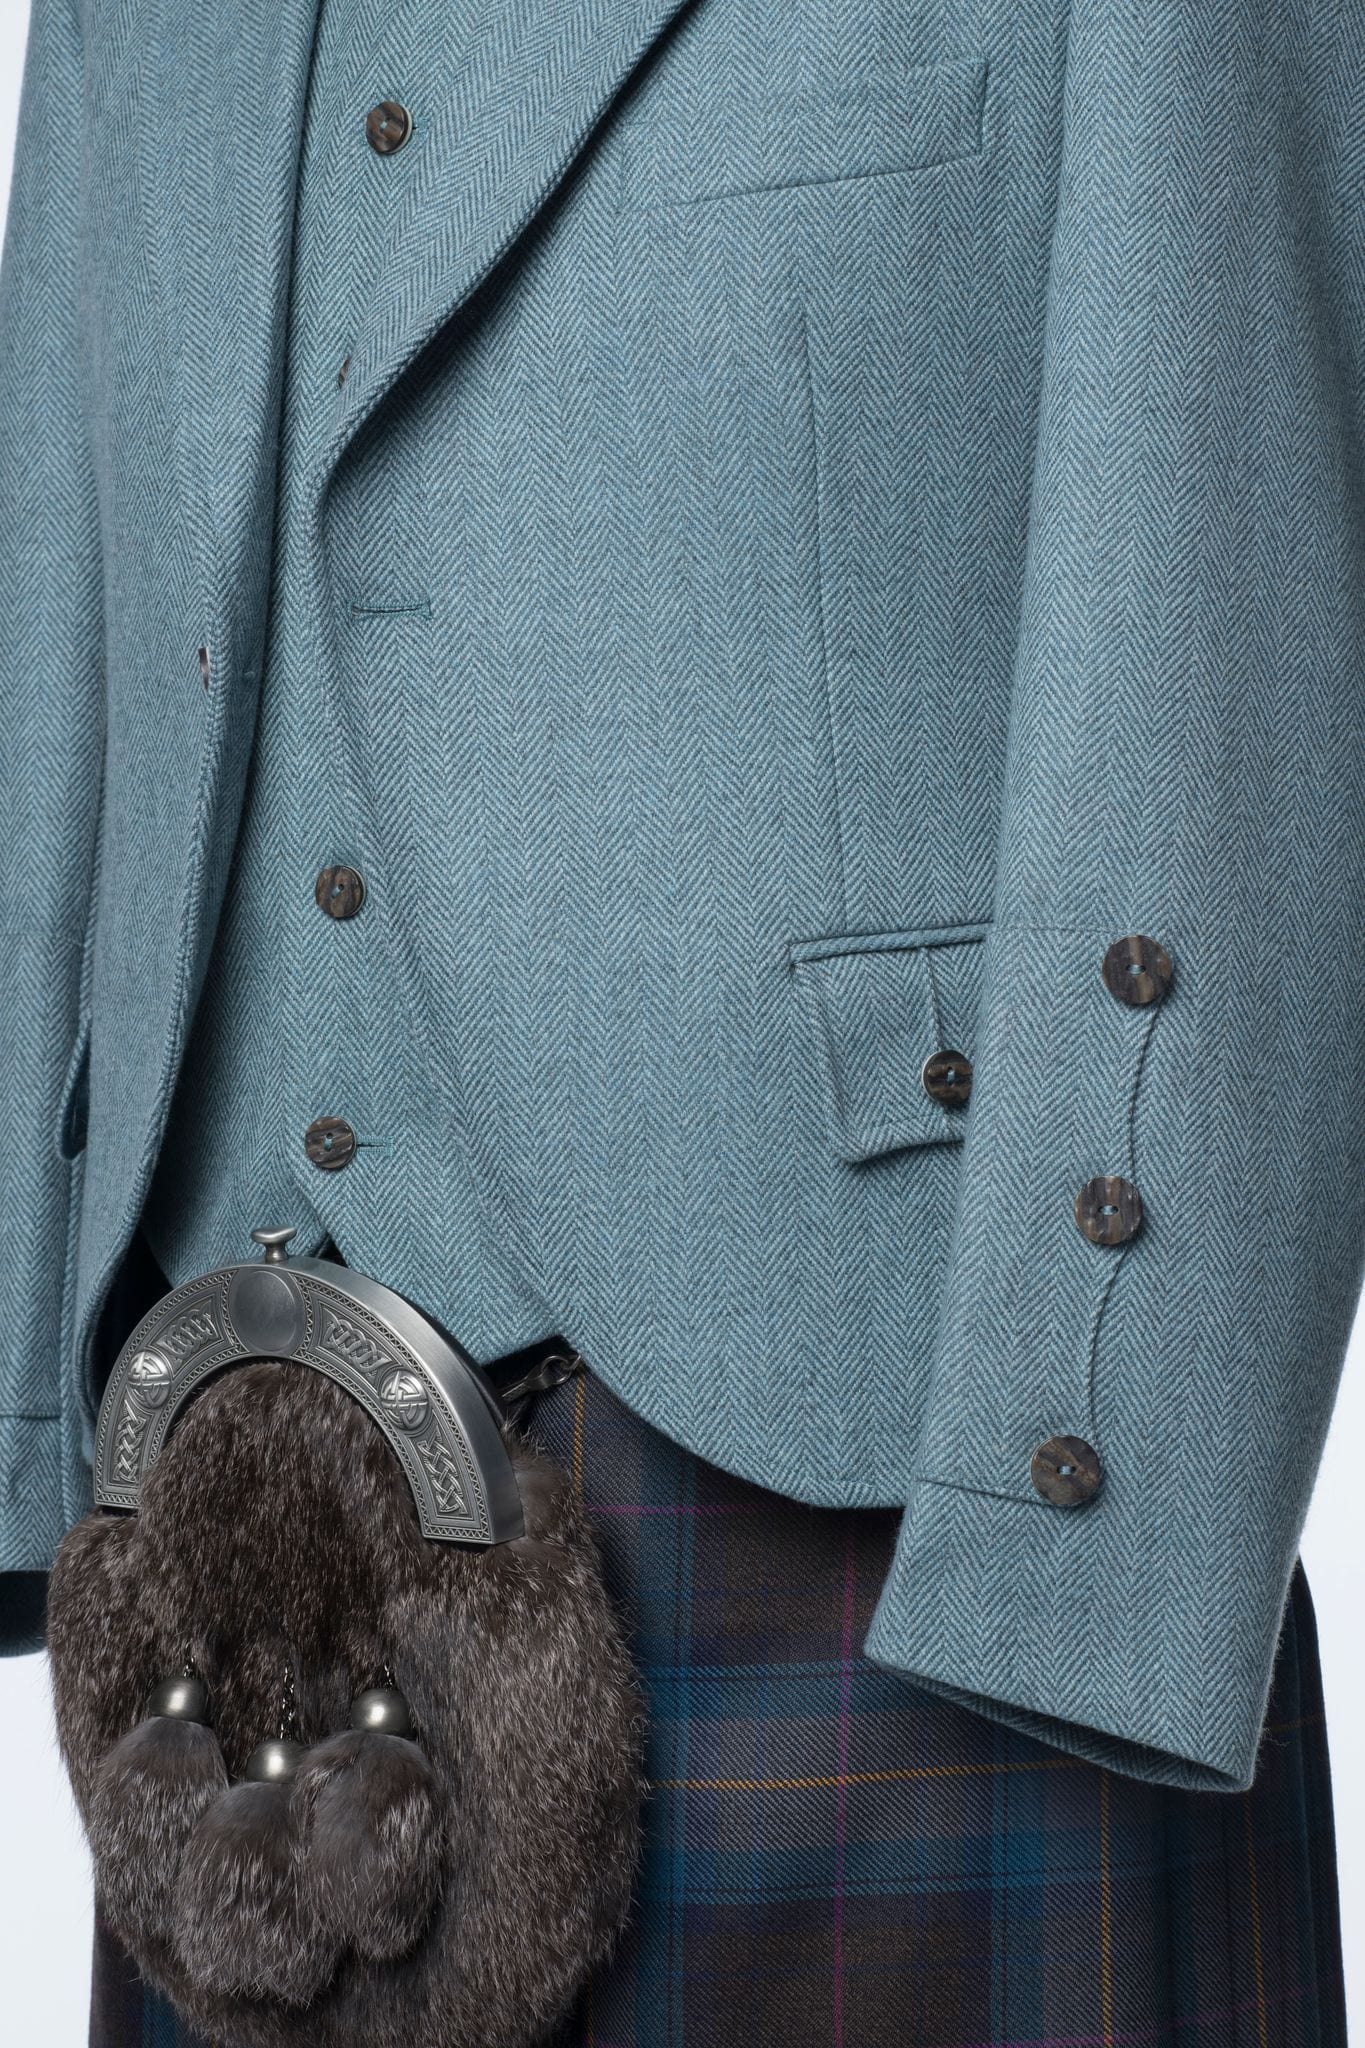 Lovat Blue Tweed Kilt Jacket and Waistcoat - MacGregor and MacDuff